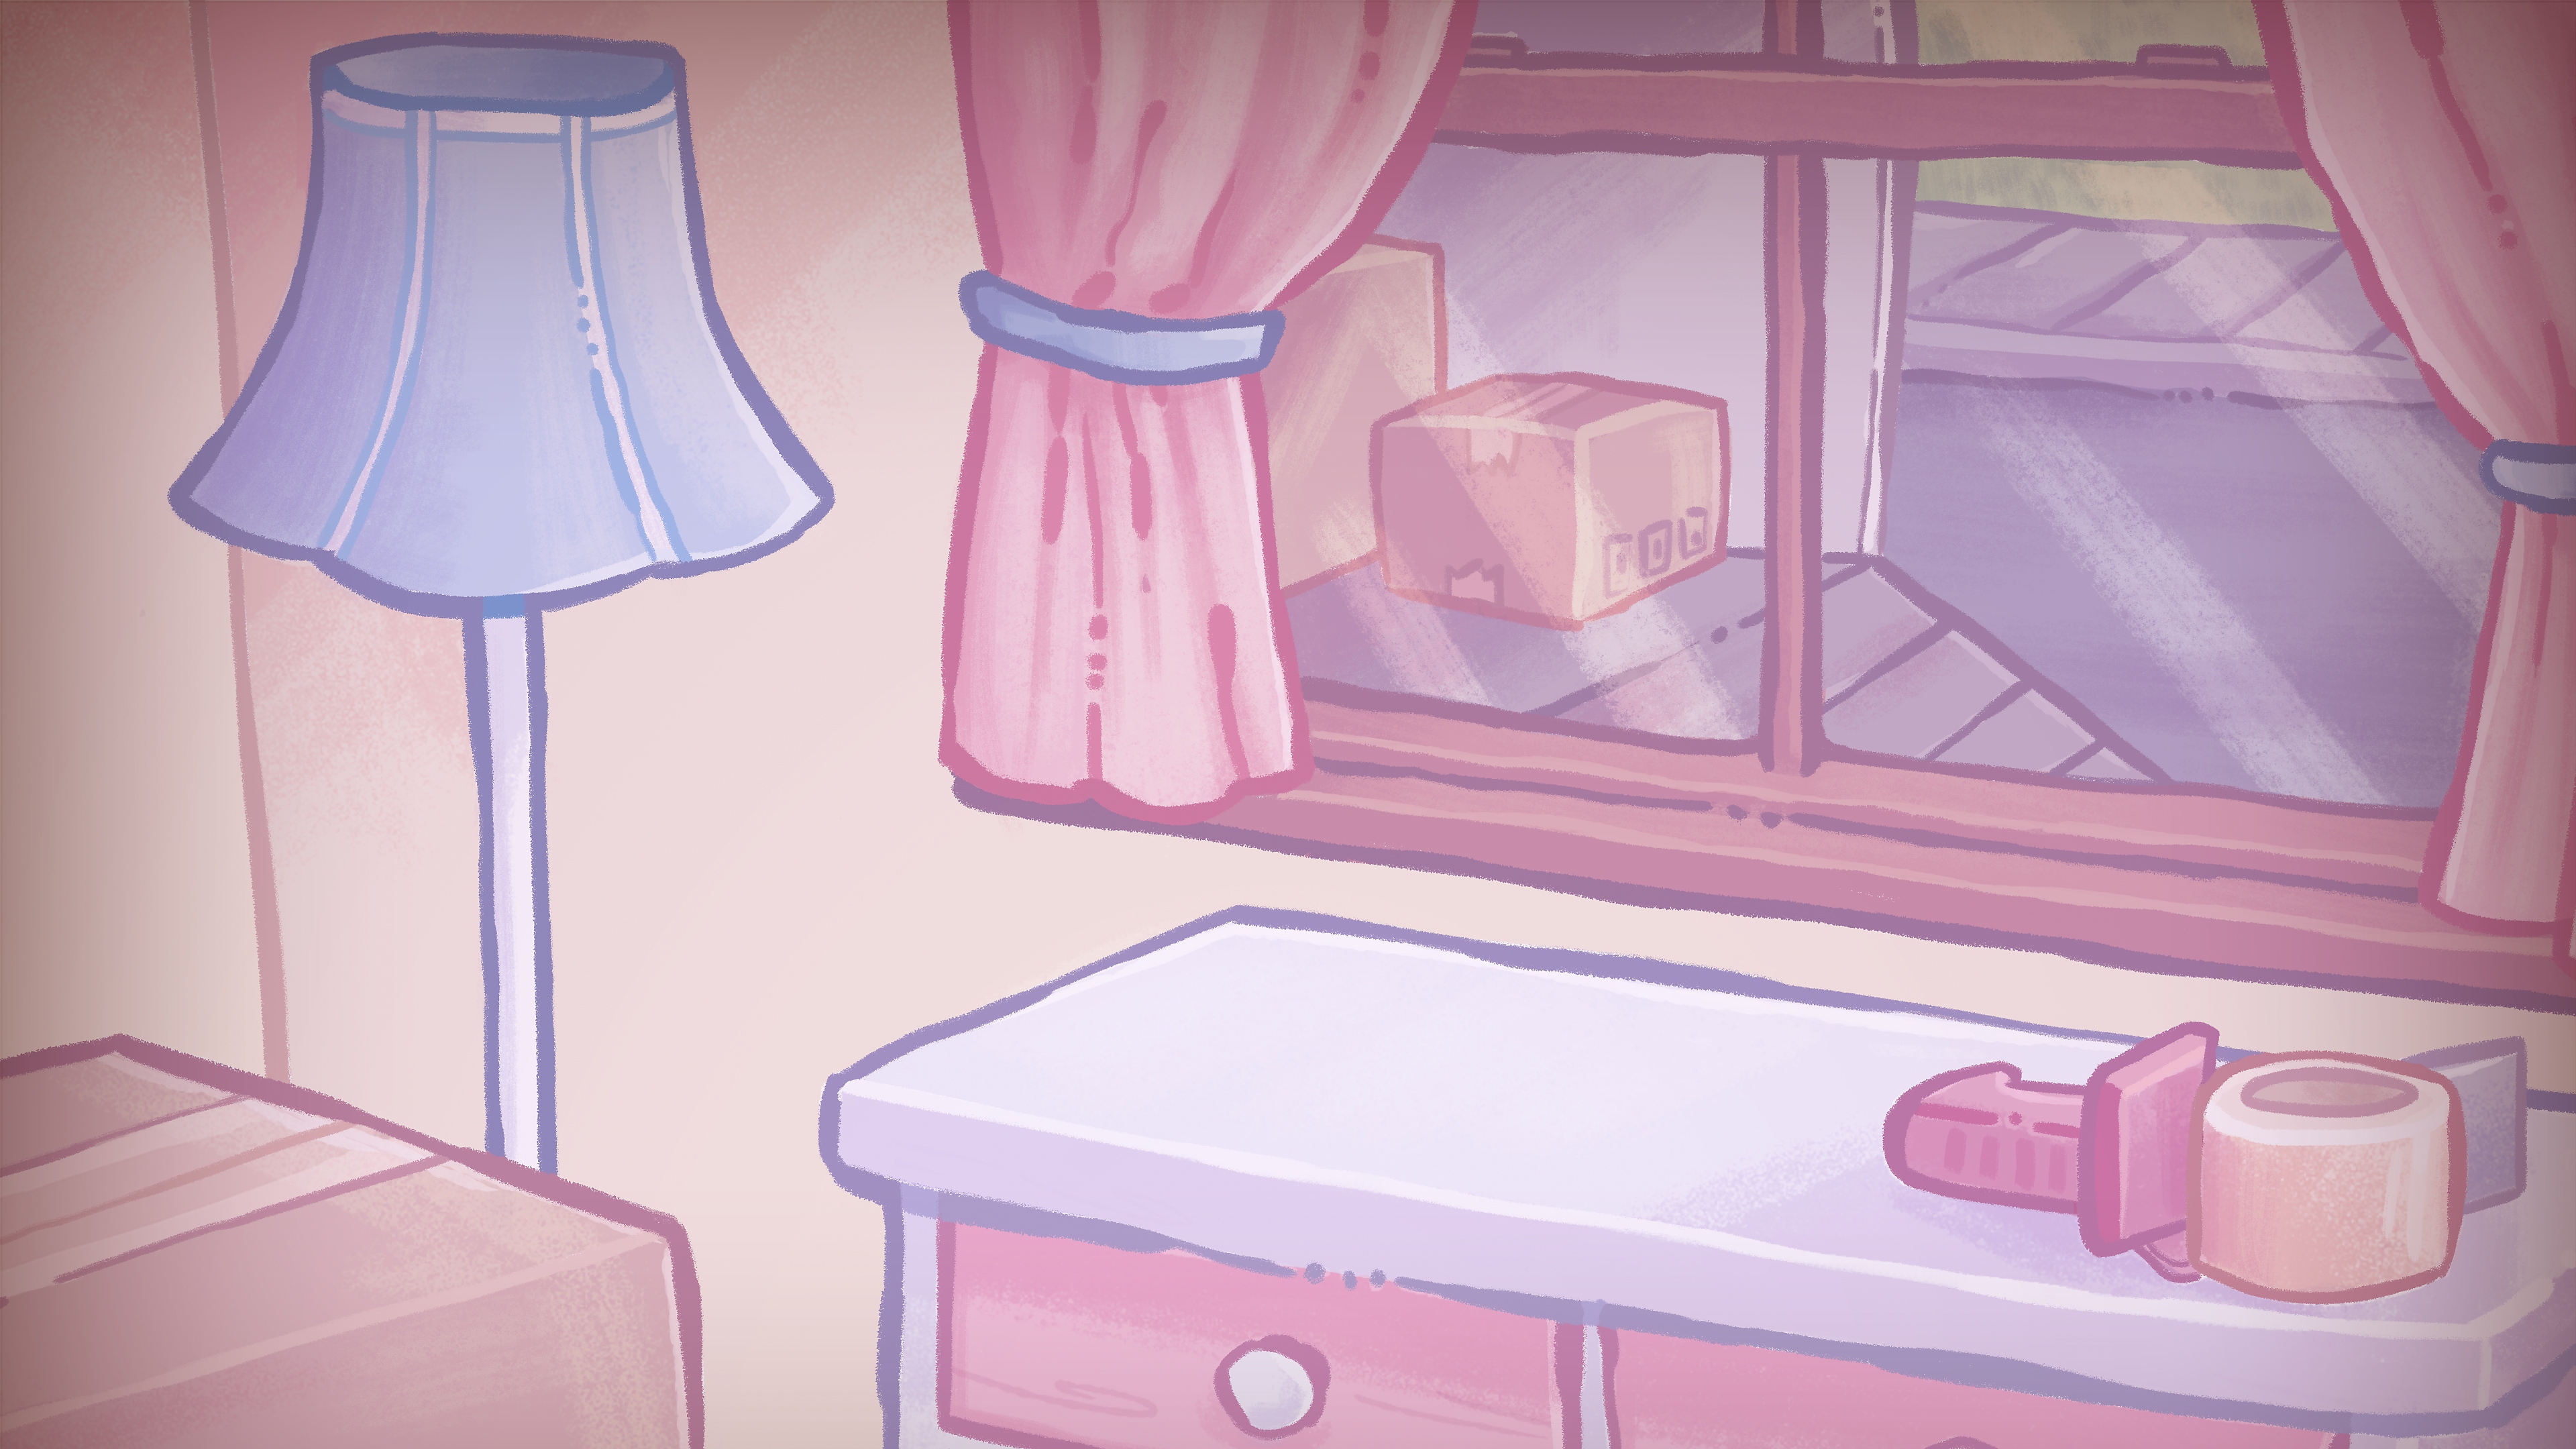 Ilustración de fondo de Unpacking mostrando una cómoda frente a una ventana